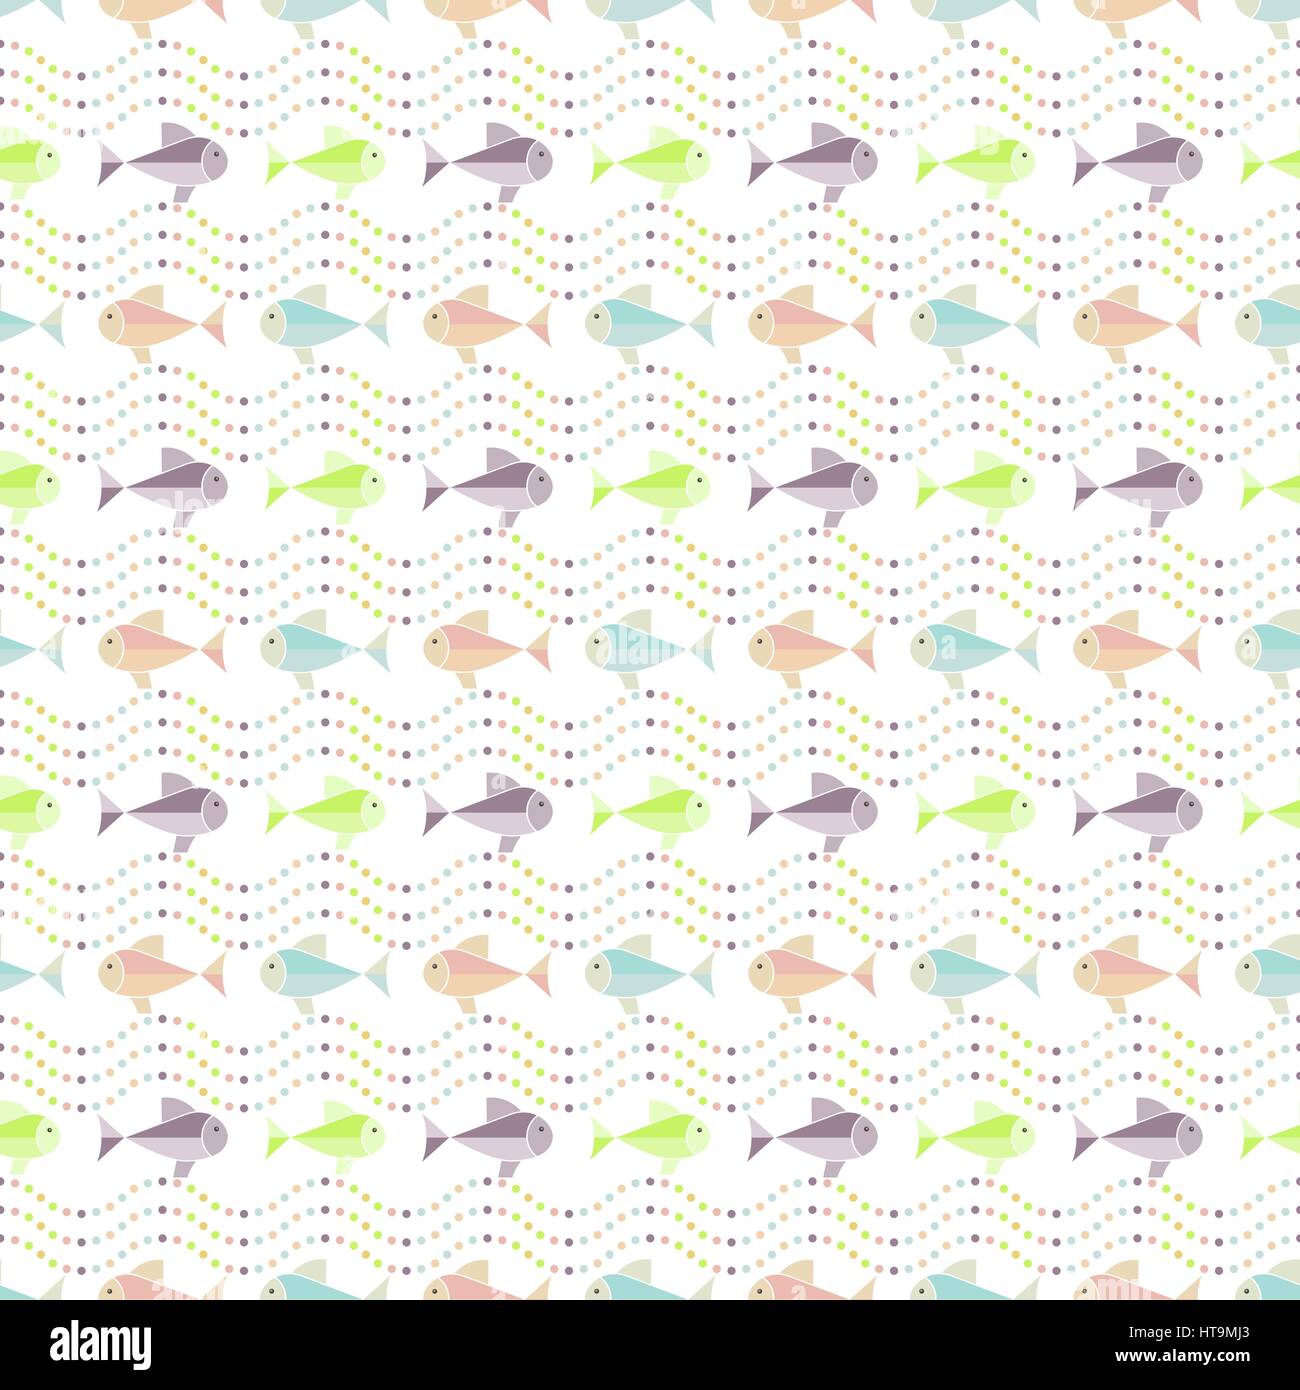 Nahtlose Muster. Abstrakten farbigen Hintergrund. Einfache Animation Textur mit sich regelmäßig wiederholenden Formen, Fische und gepunktete Wellen. Vektorelement von g Stock Vektor